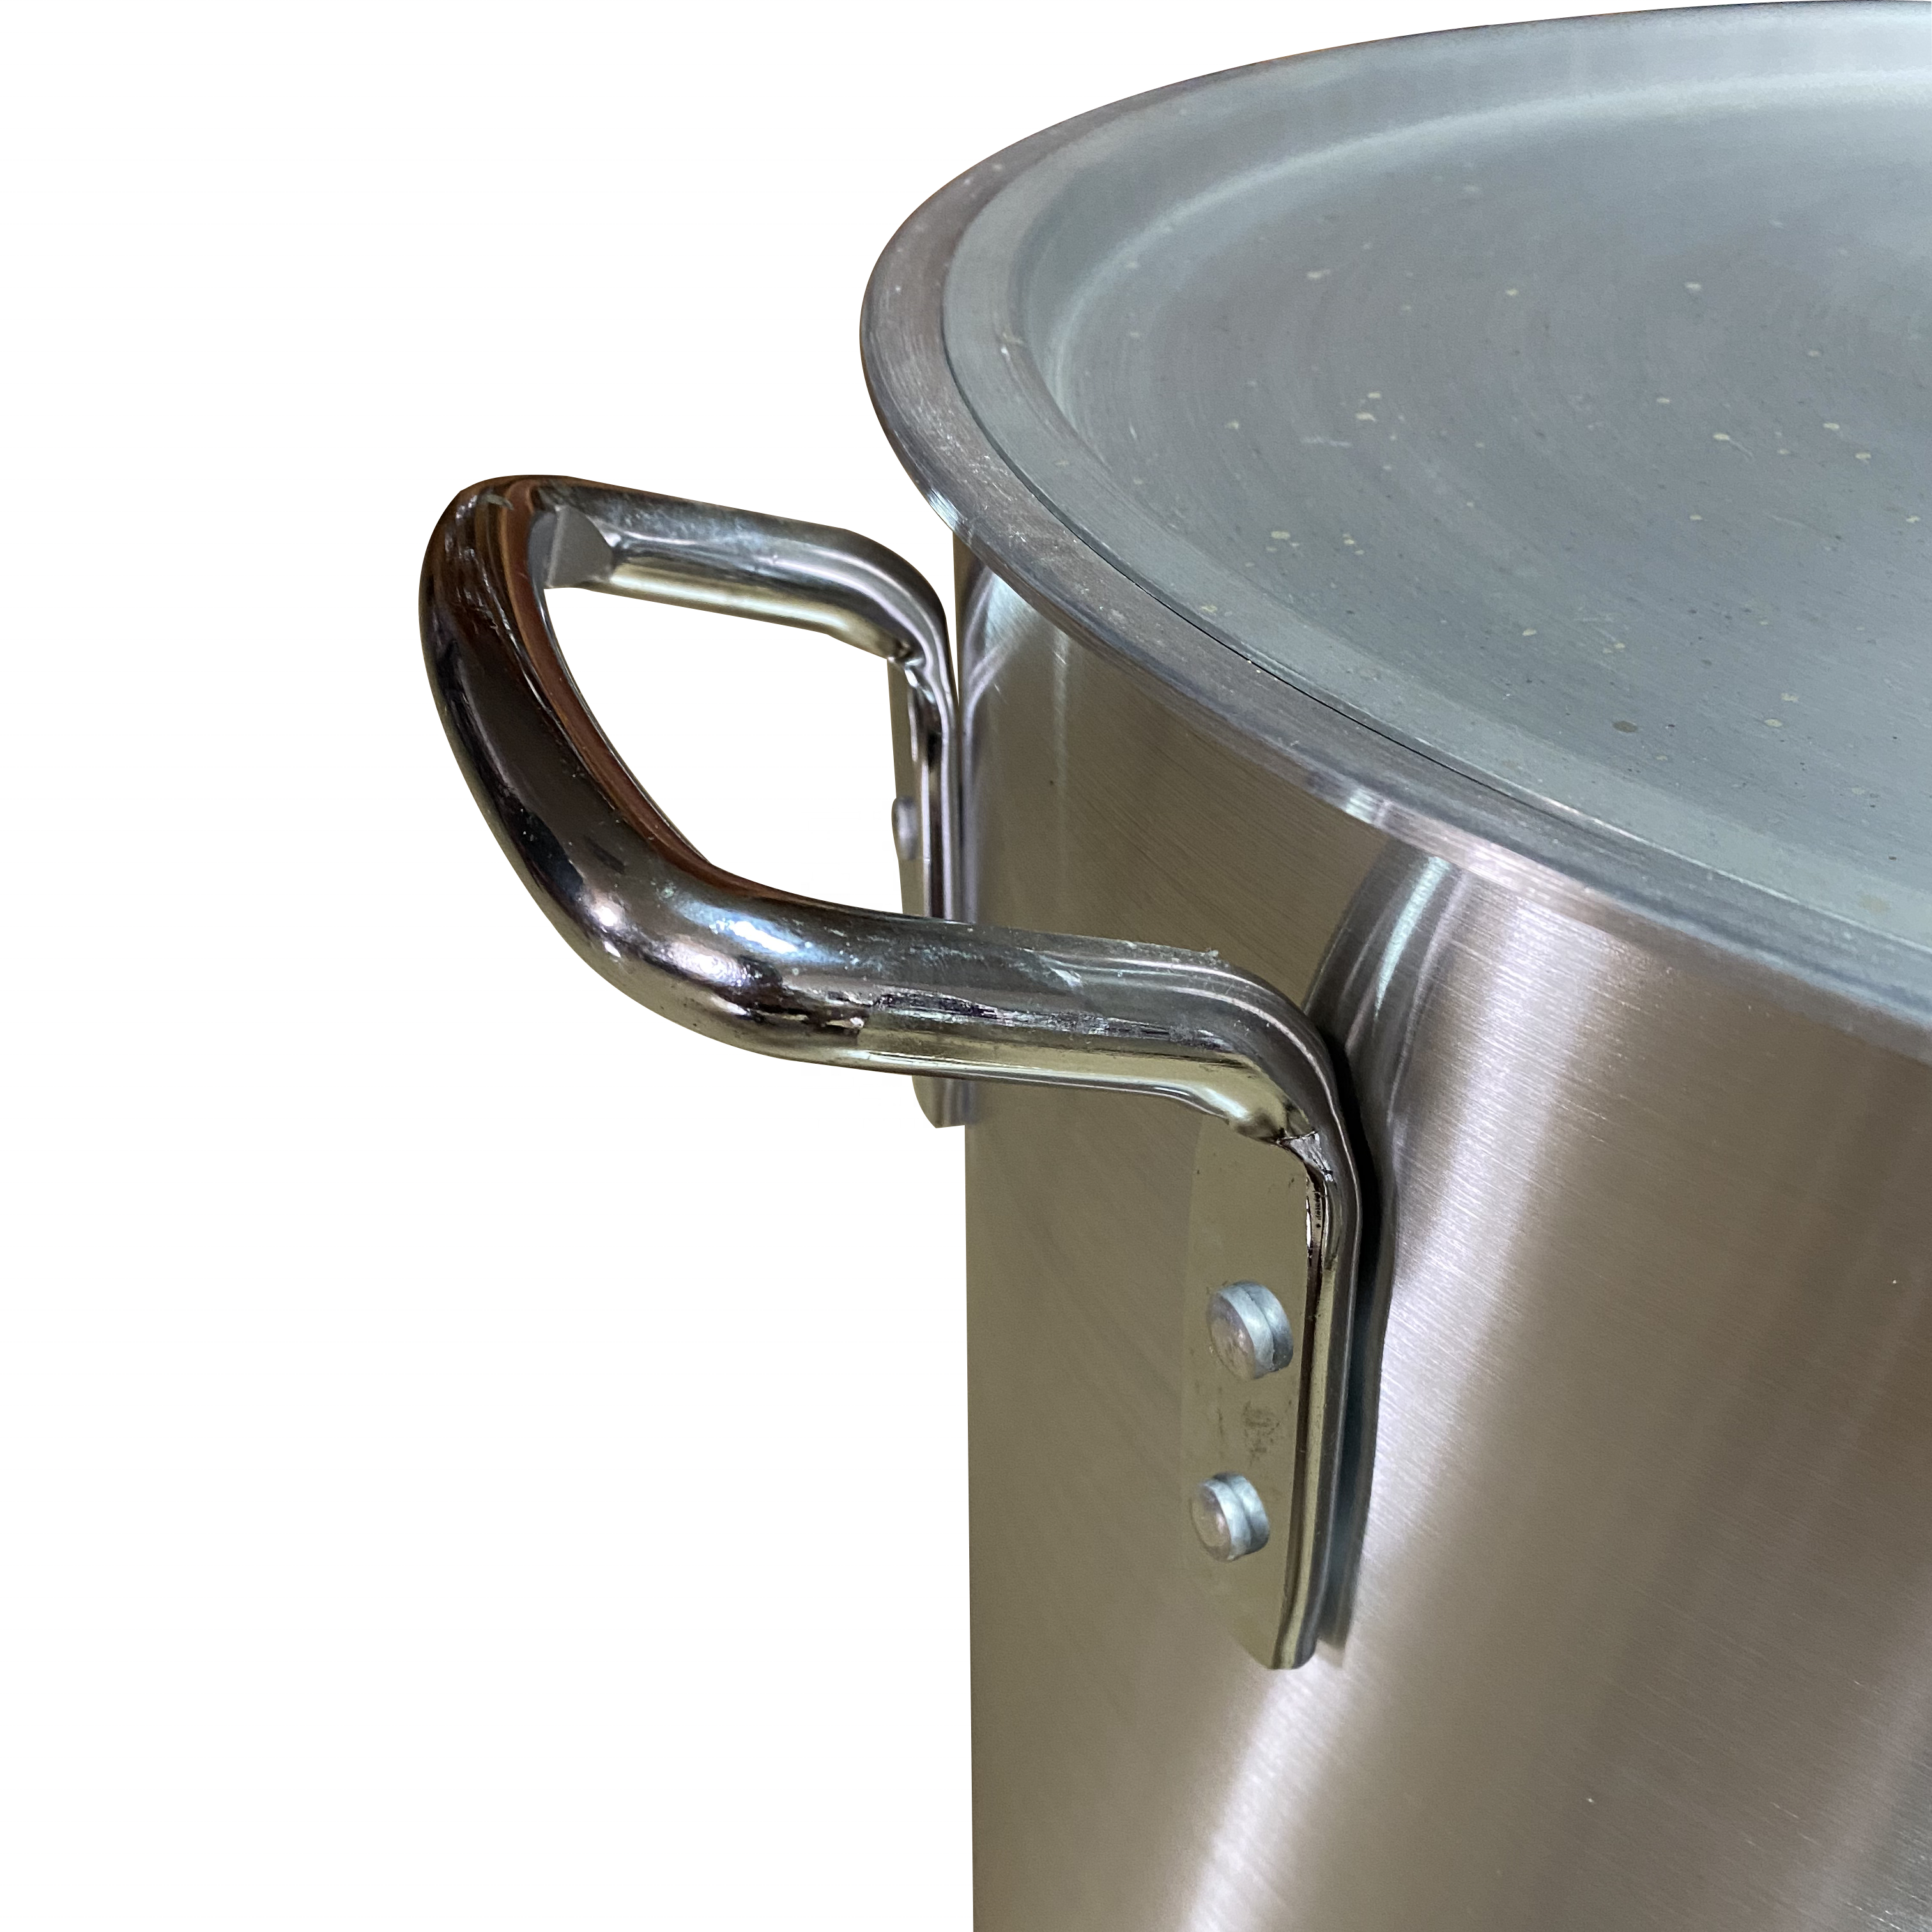 174qt Aluminium Big Pot Flared Rim Cookware Sets for Home Restaurant